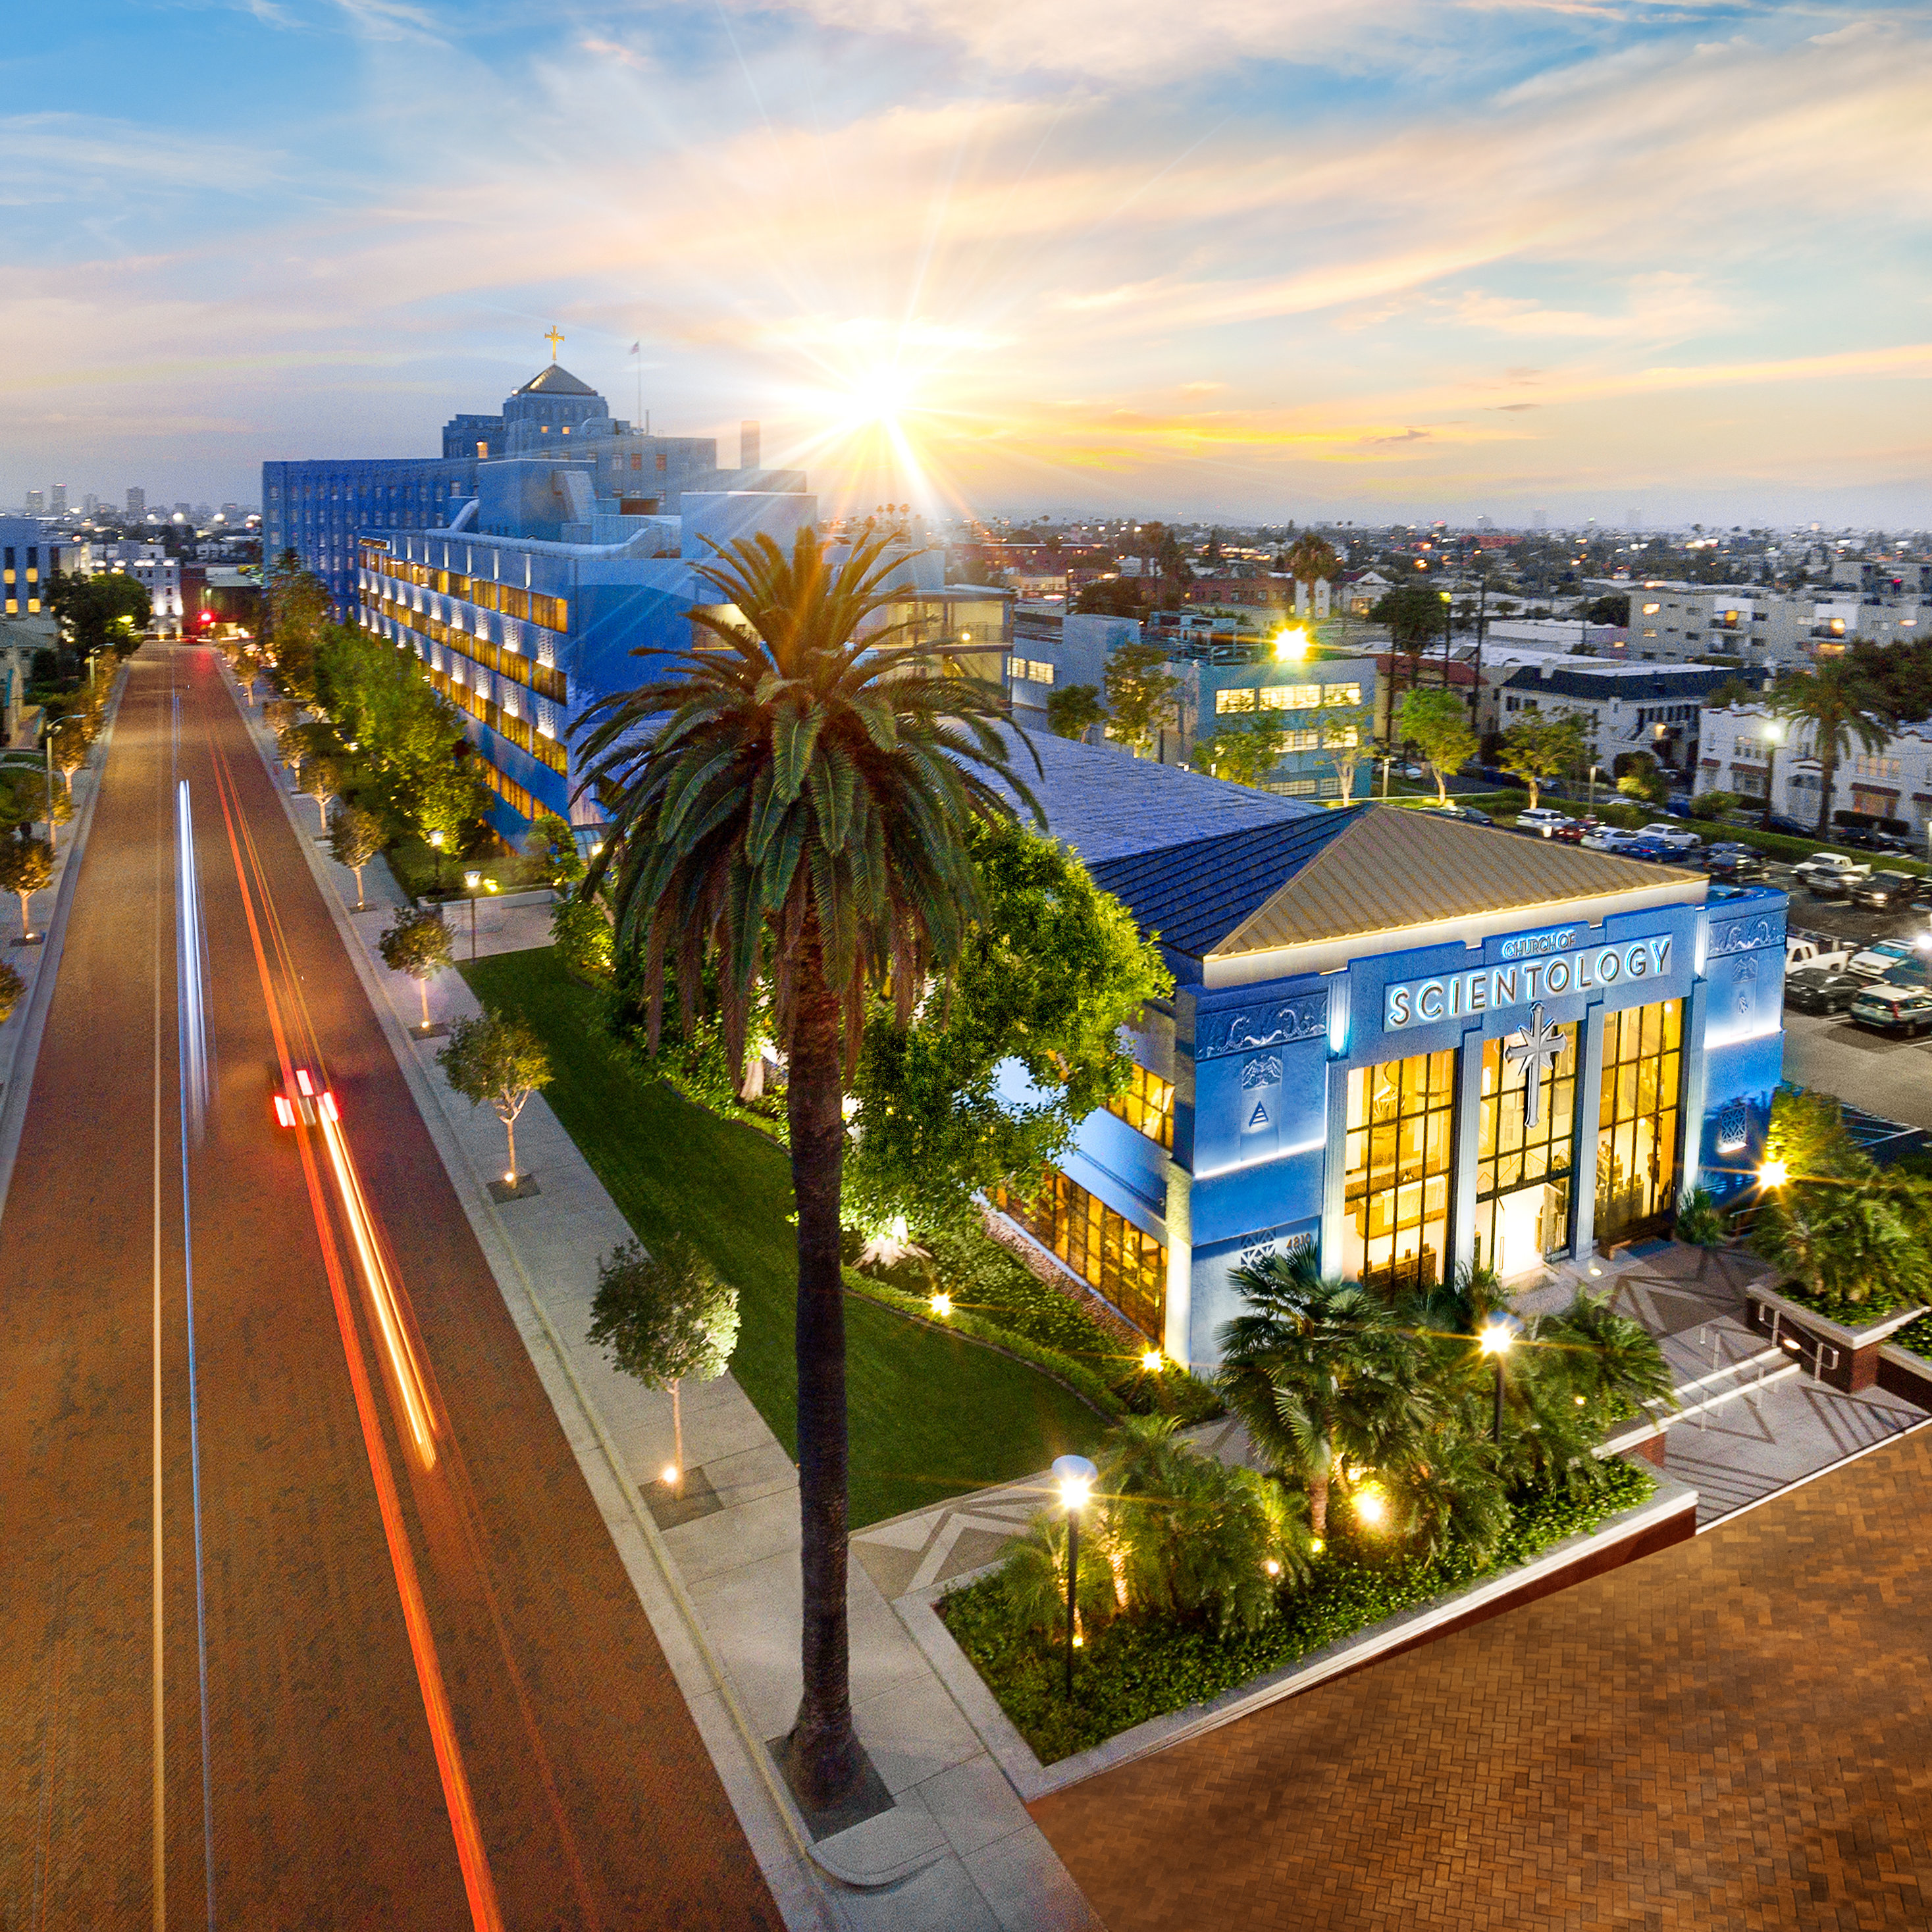 Los Angeles Gli spettatori hanno accesso completo a tutti i locali e gli avvenimenti della Chiesa di Scientology situata lungo il Sunset Boulevard e la L. Ron Hubbard Way.